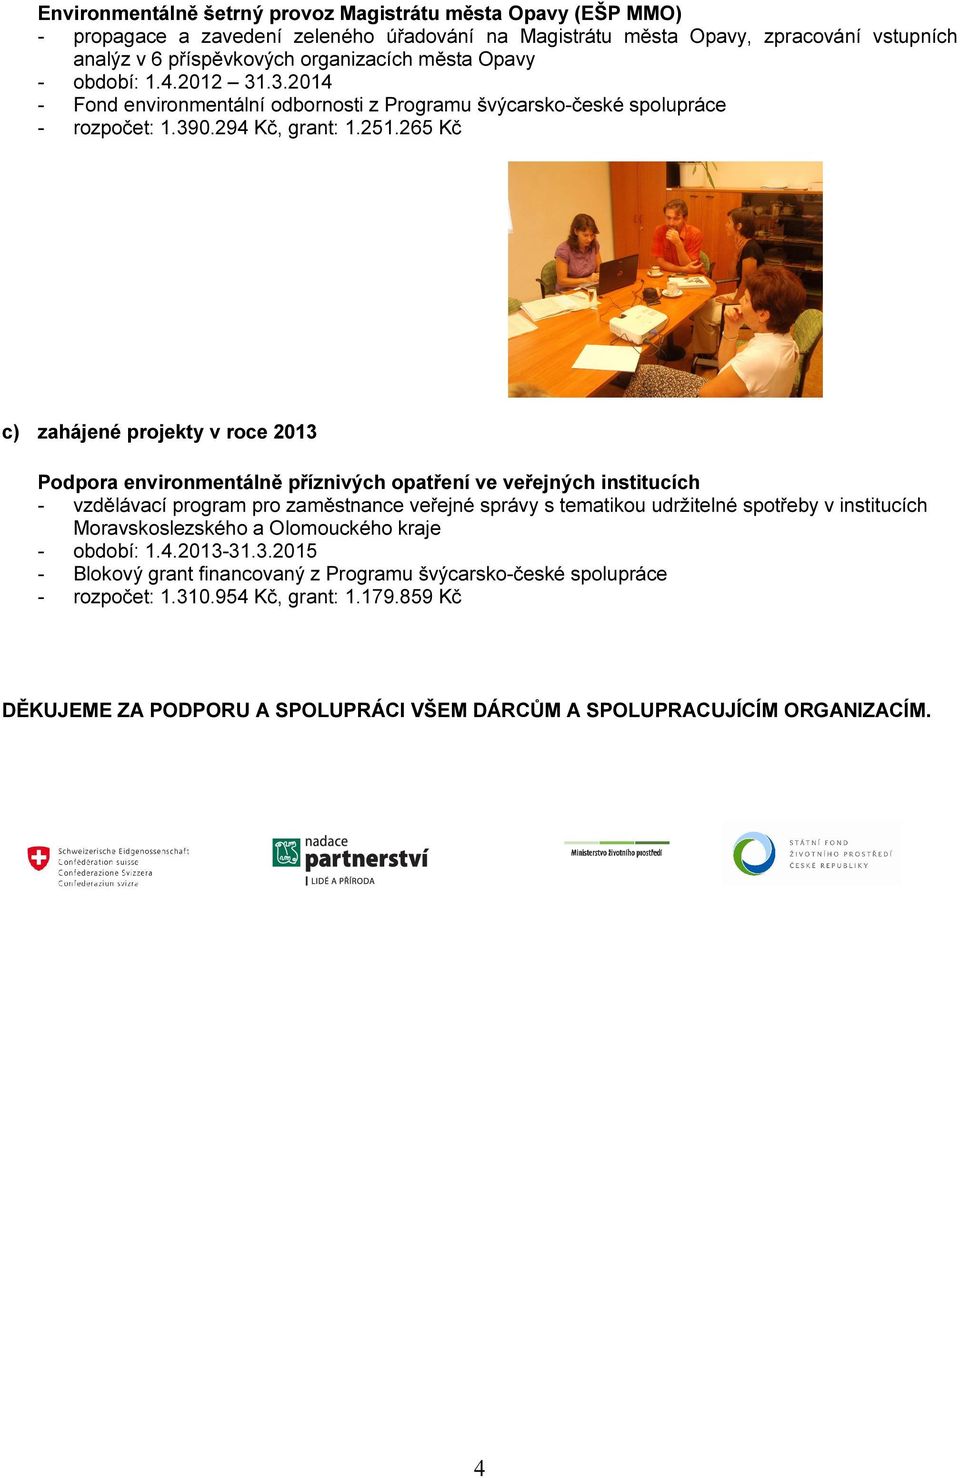 265 Kč c) zahájené projekty v roce 2013 Podpora environmentálně příznivých opatření ve veřejných institucích - vzdělávací program pro zaměstnance veřejné správy s tematikou udržitelné spotřeby v